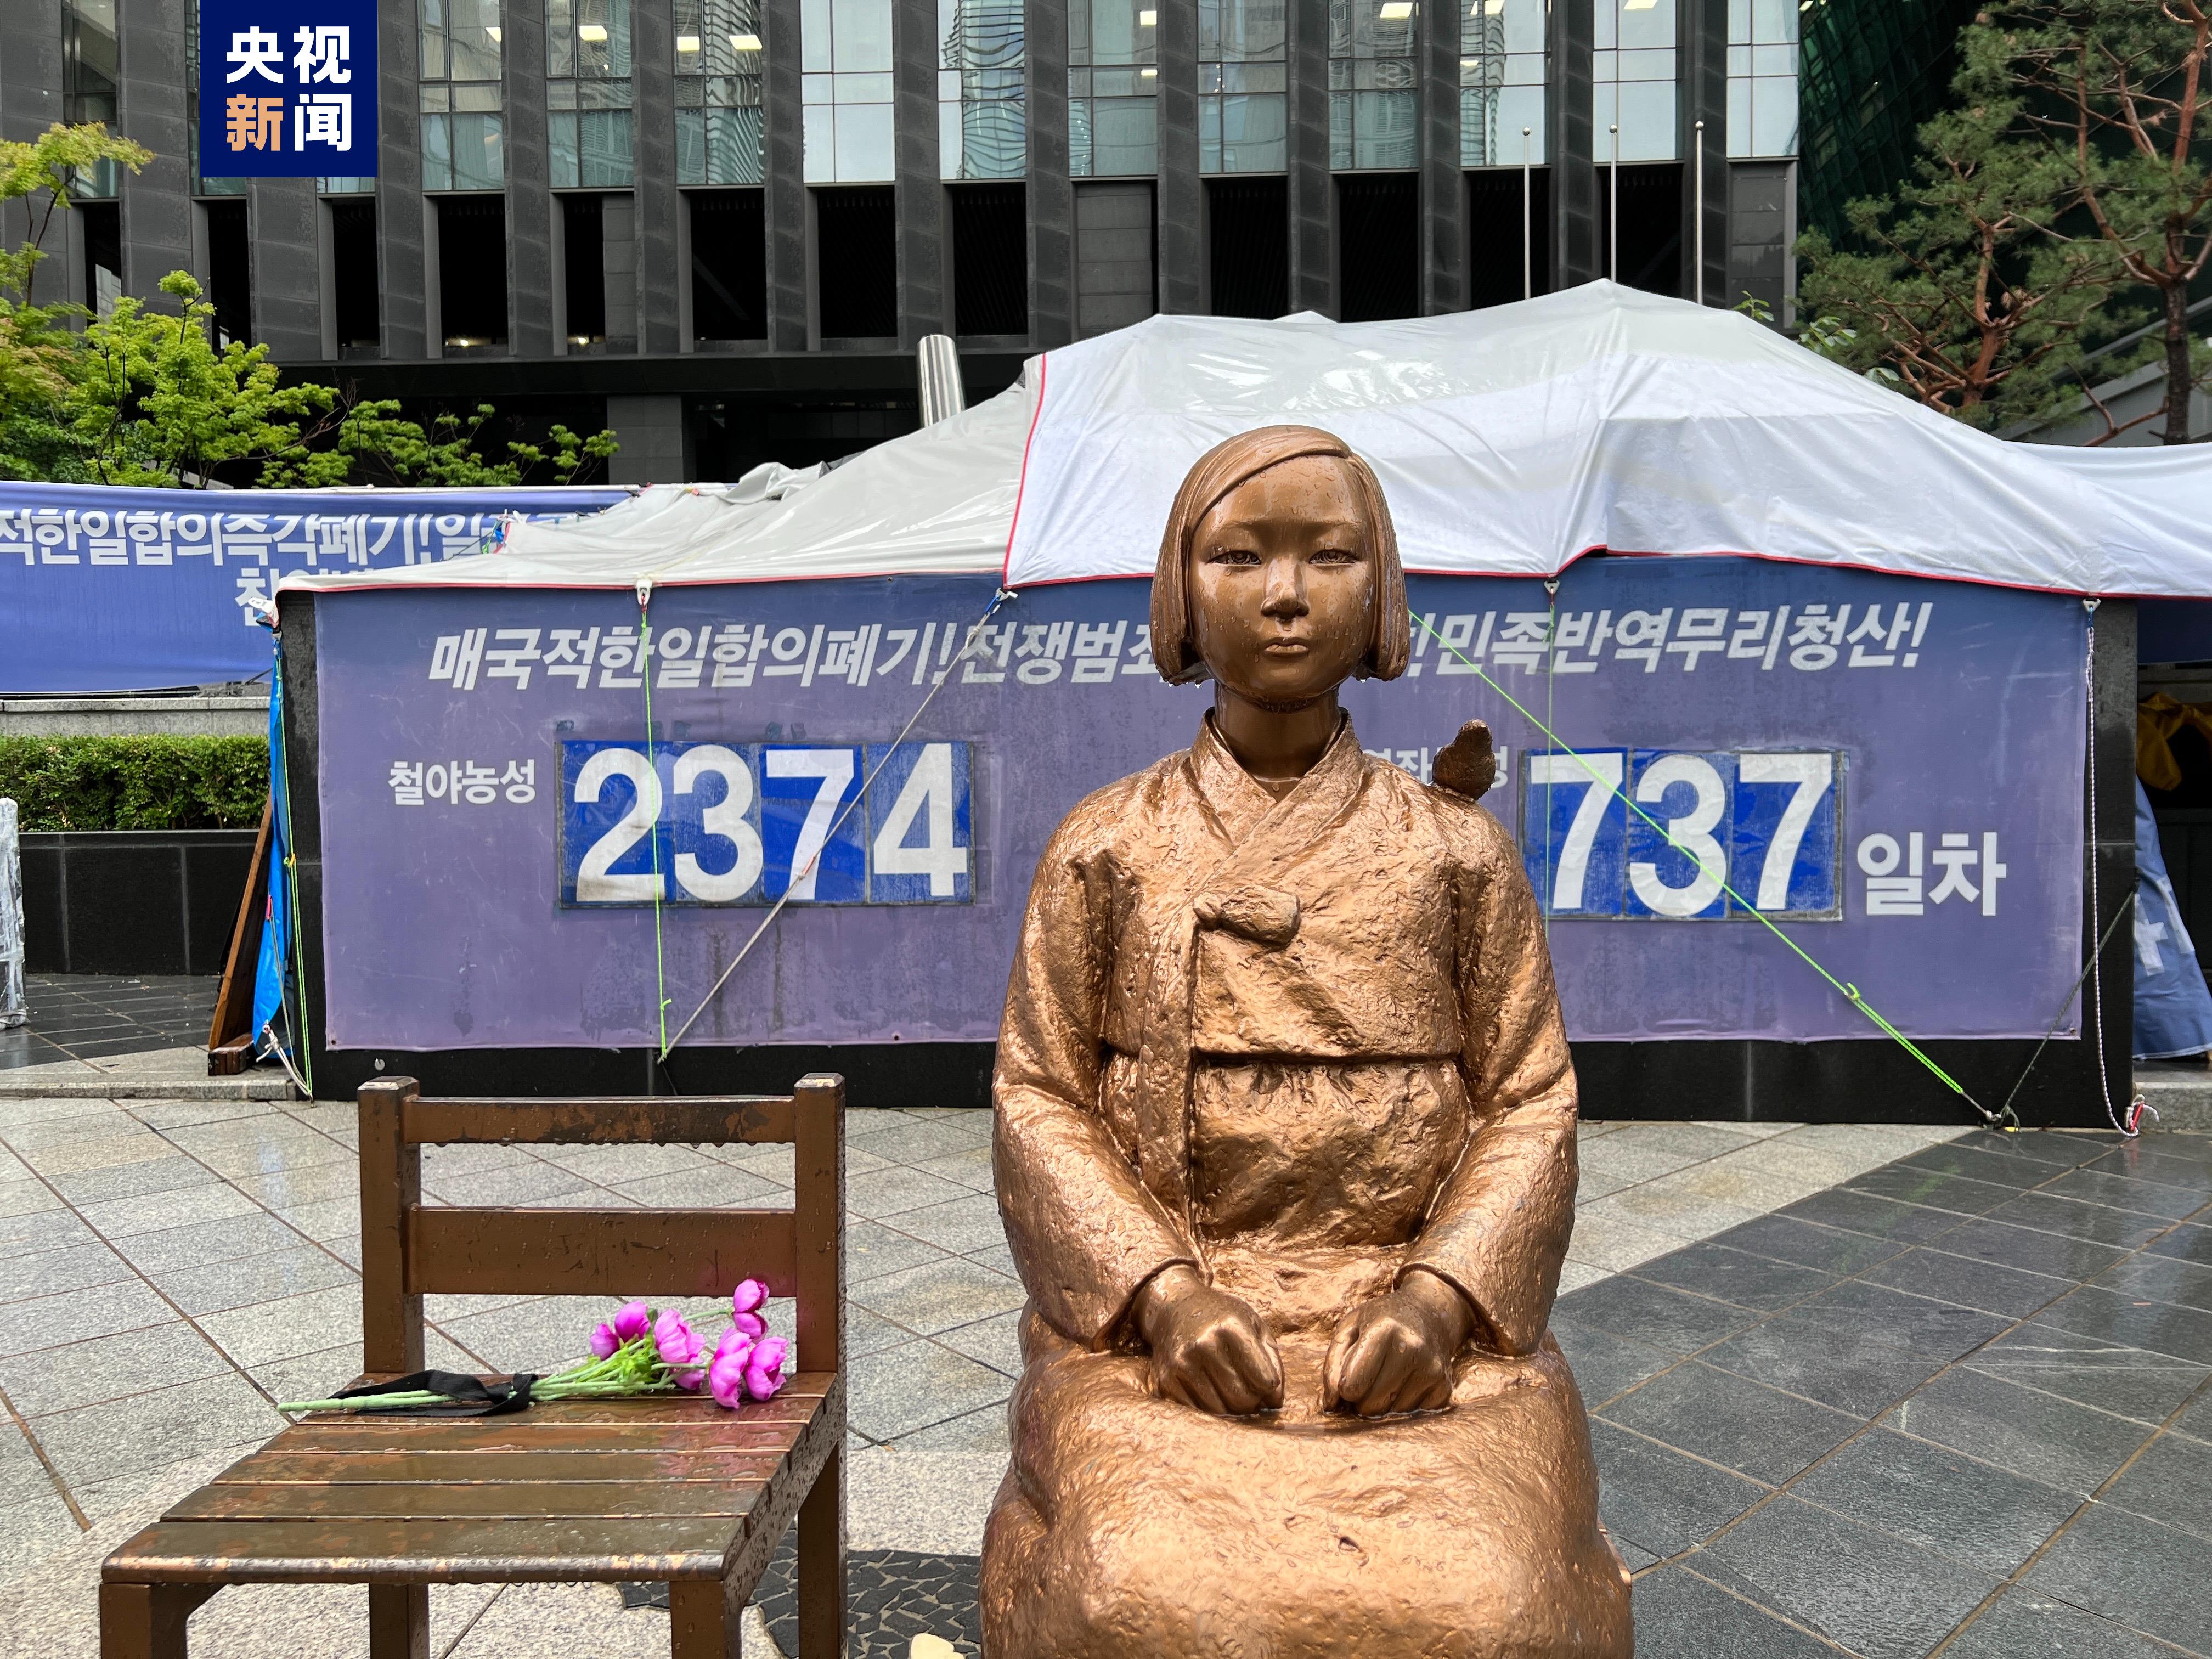 韩国多地举行日军“慰安妇”受害者纪念日活动